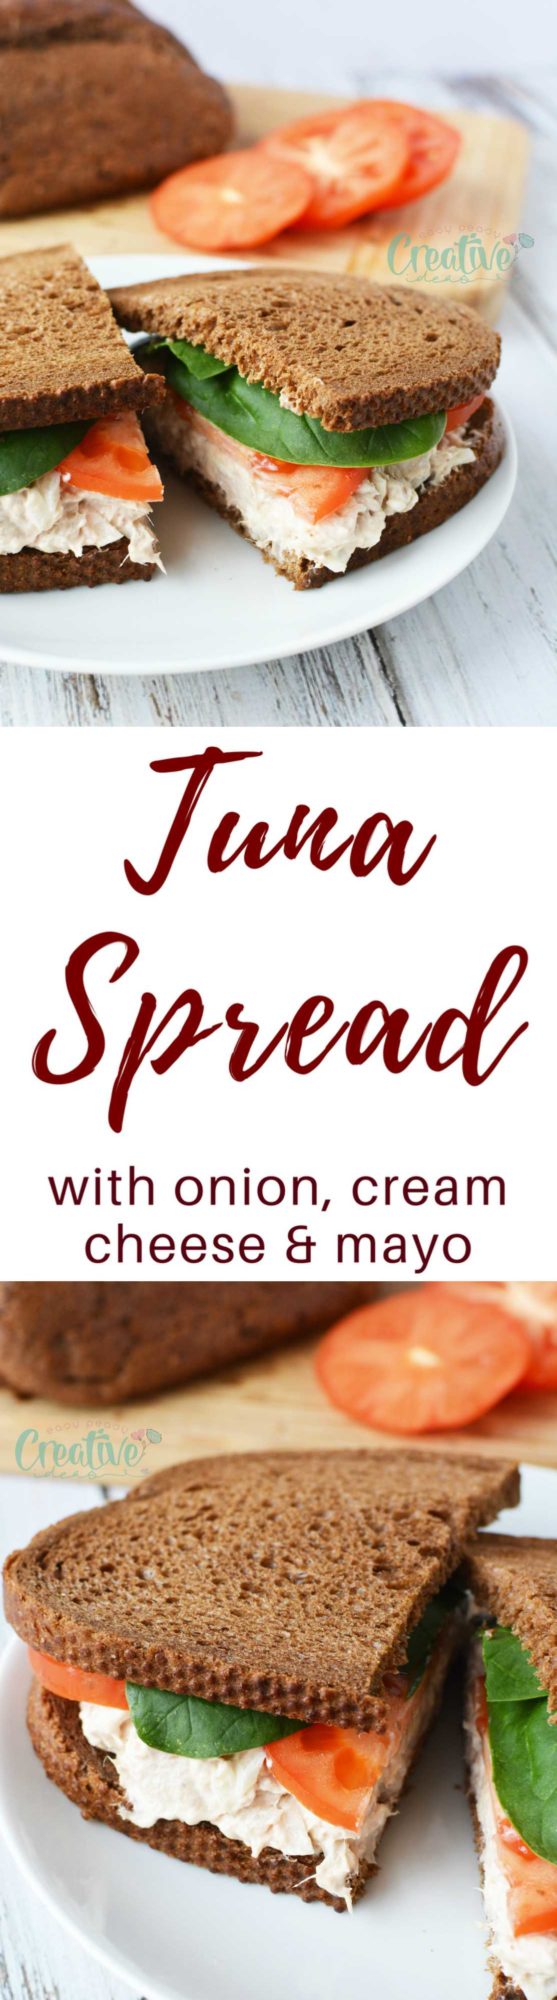 Tuna spread recipe